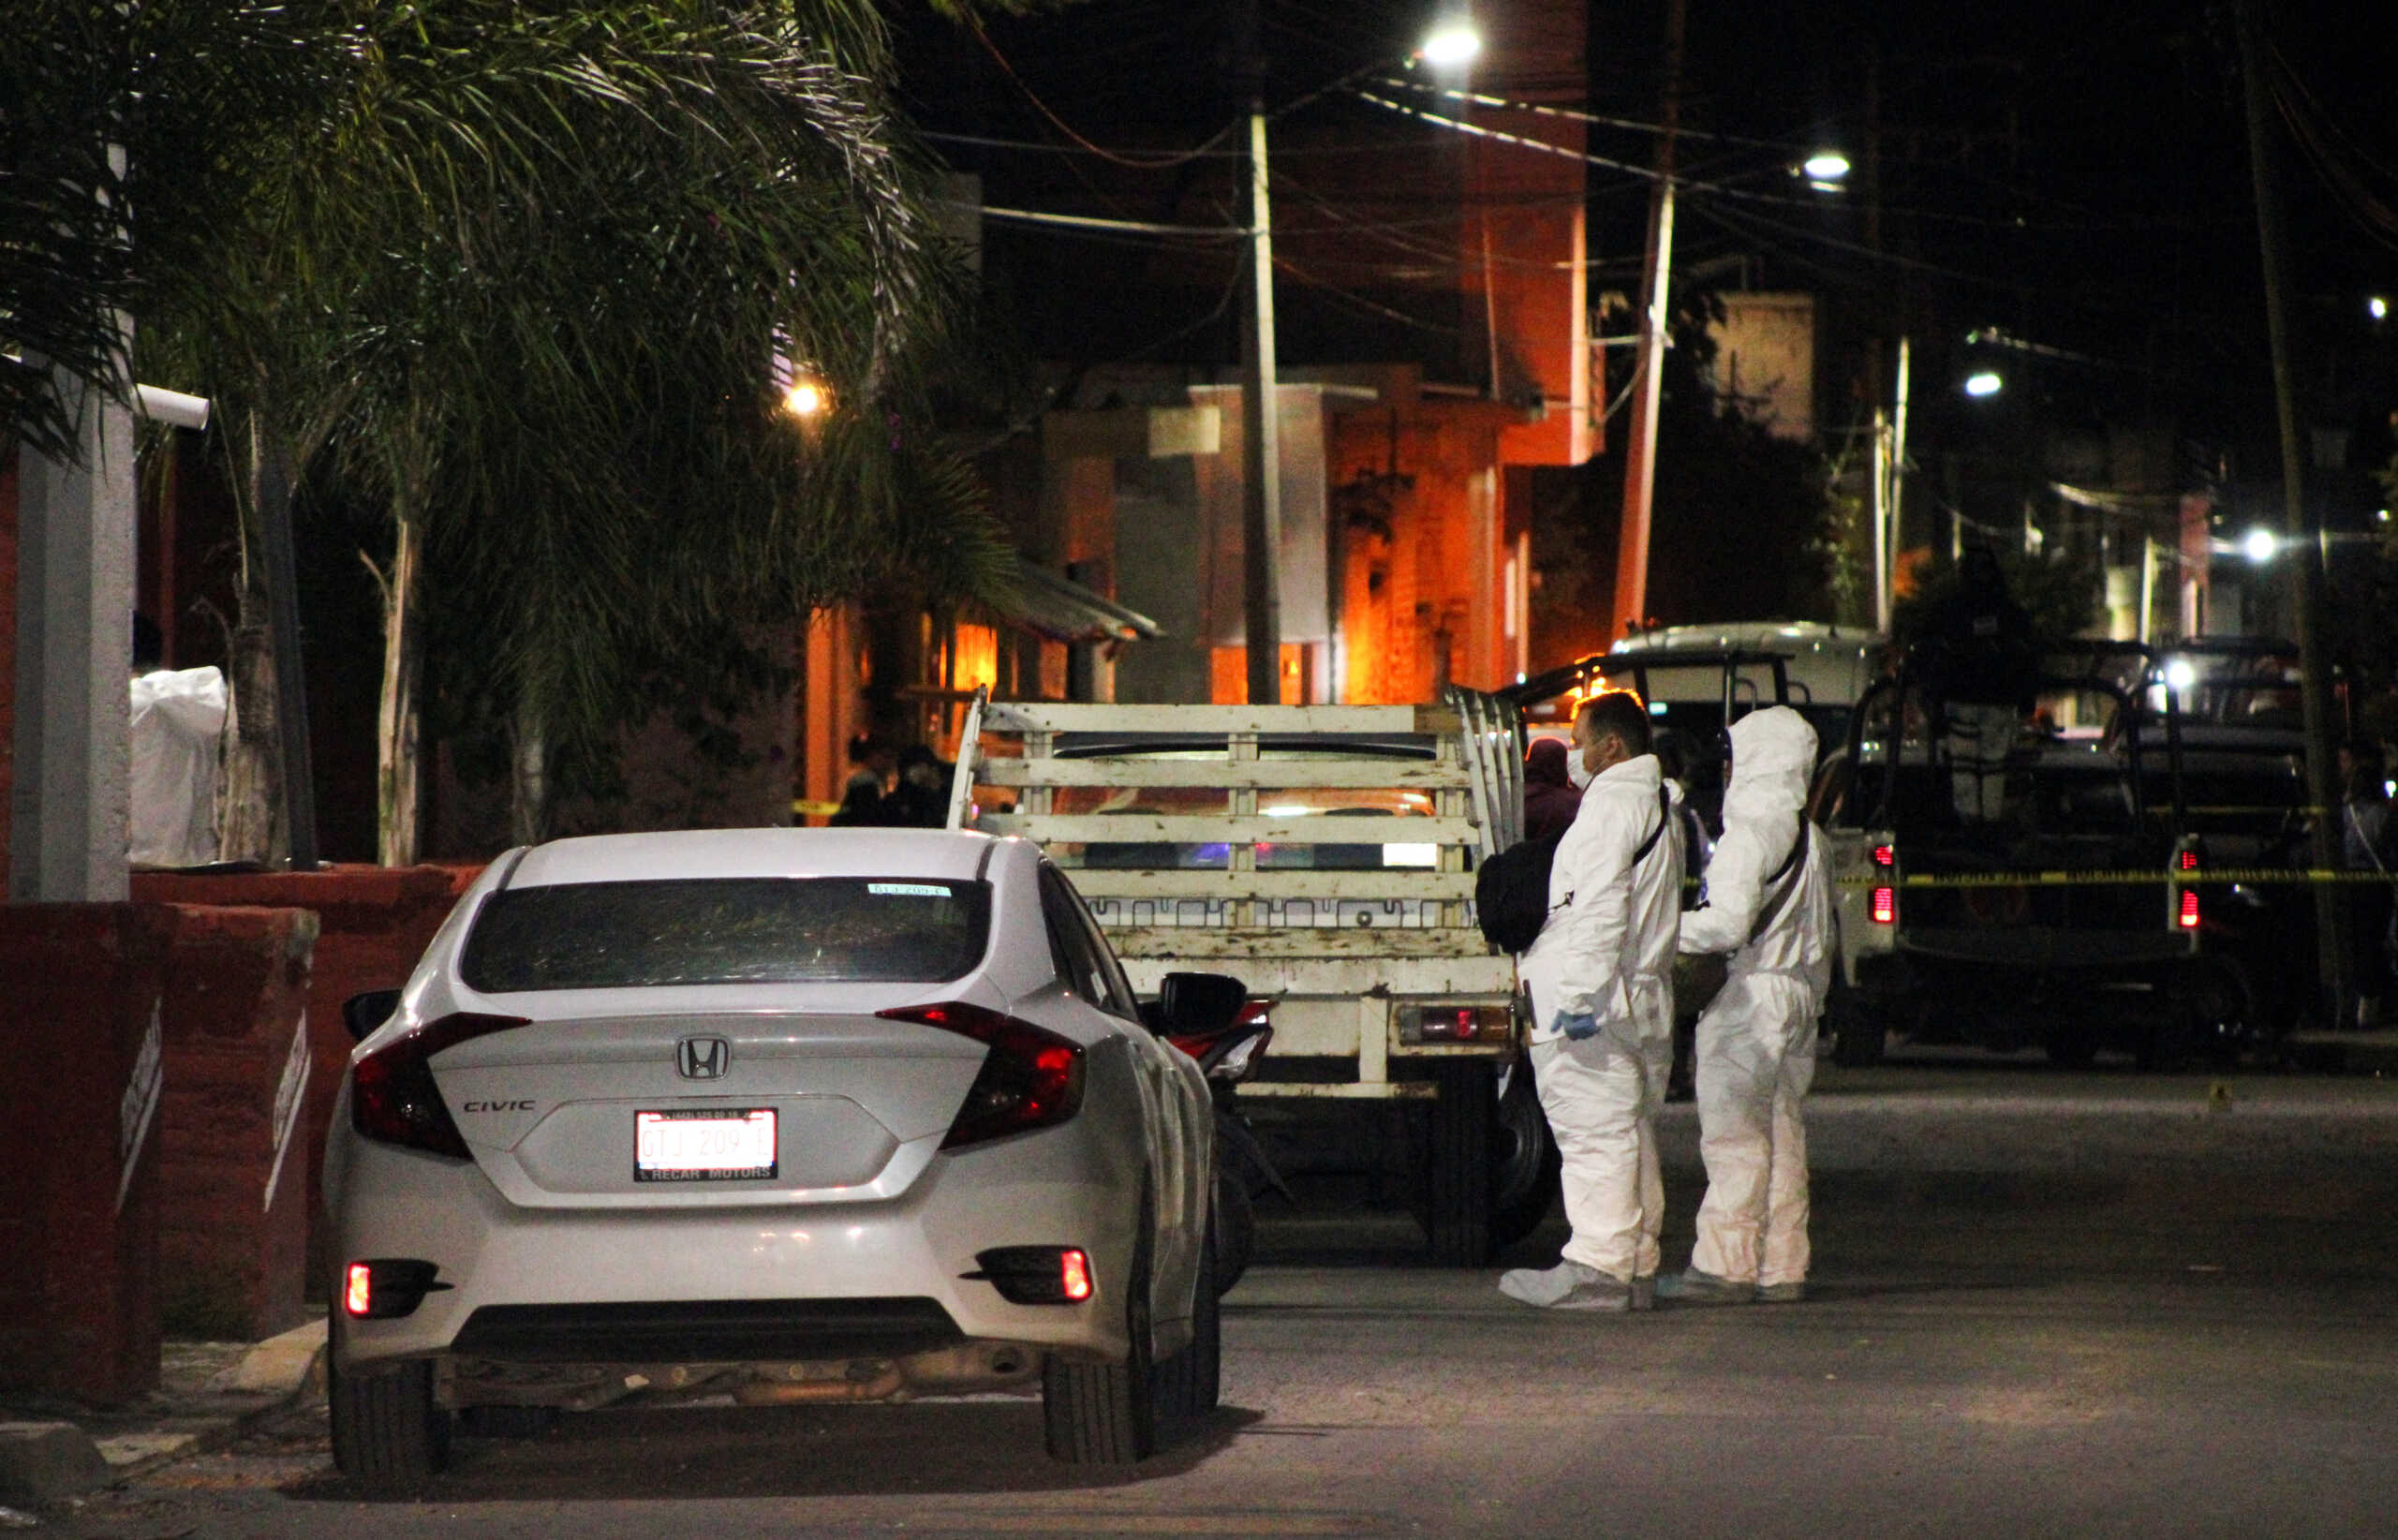 Μεξικό: Πυροβολισμοί σε αίθουσα μπιλιάρδου στην Γουαναχουάτο – 10 νεκροί